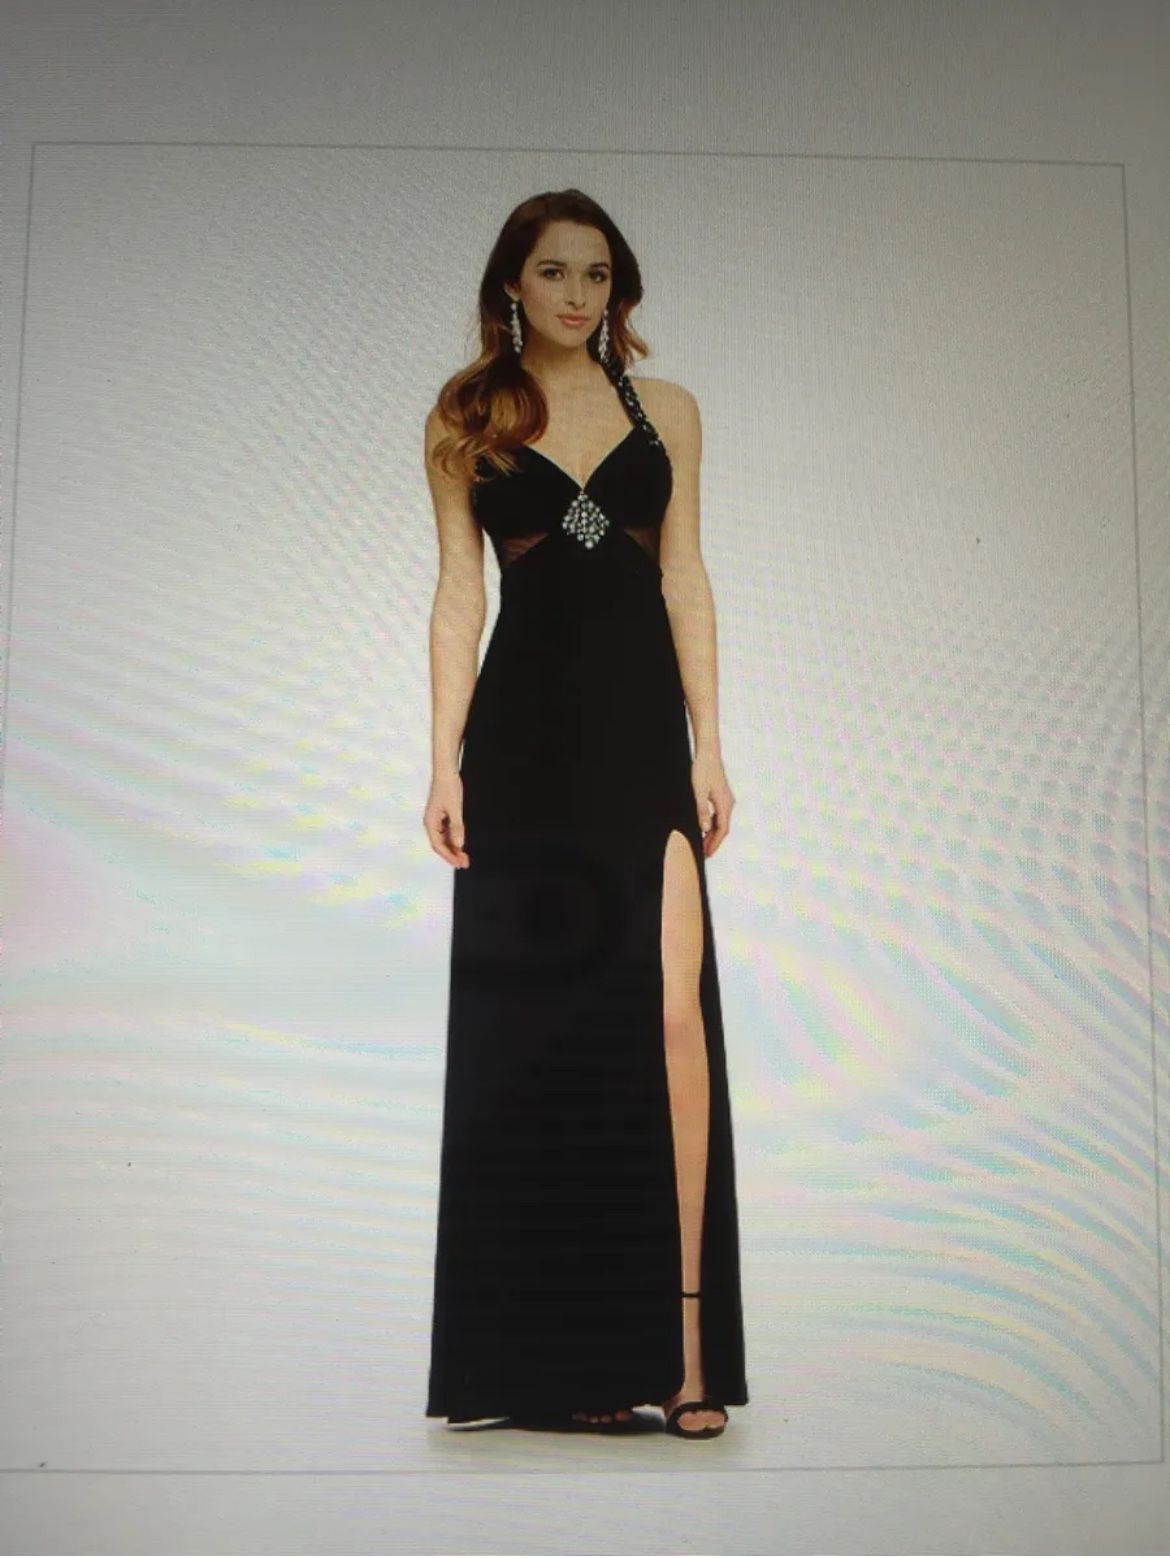 Black Full Length Prom Dress Size 1